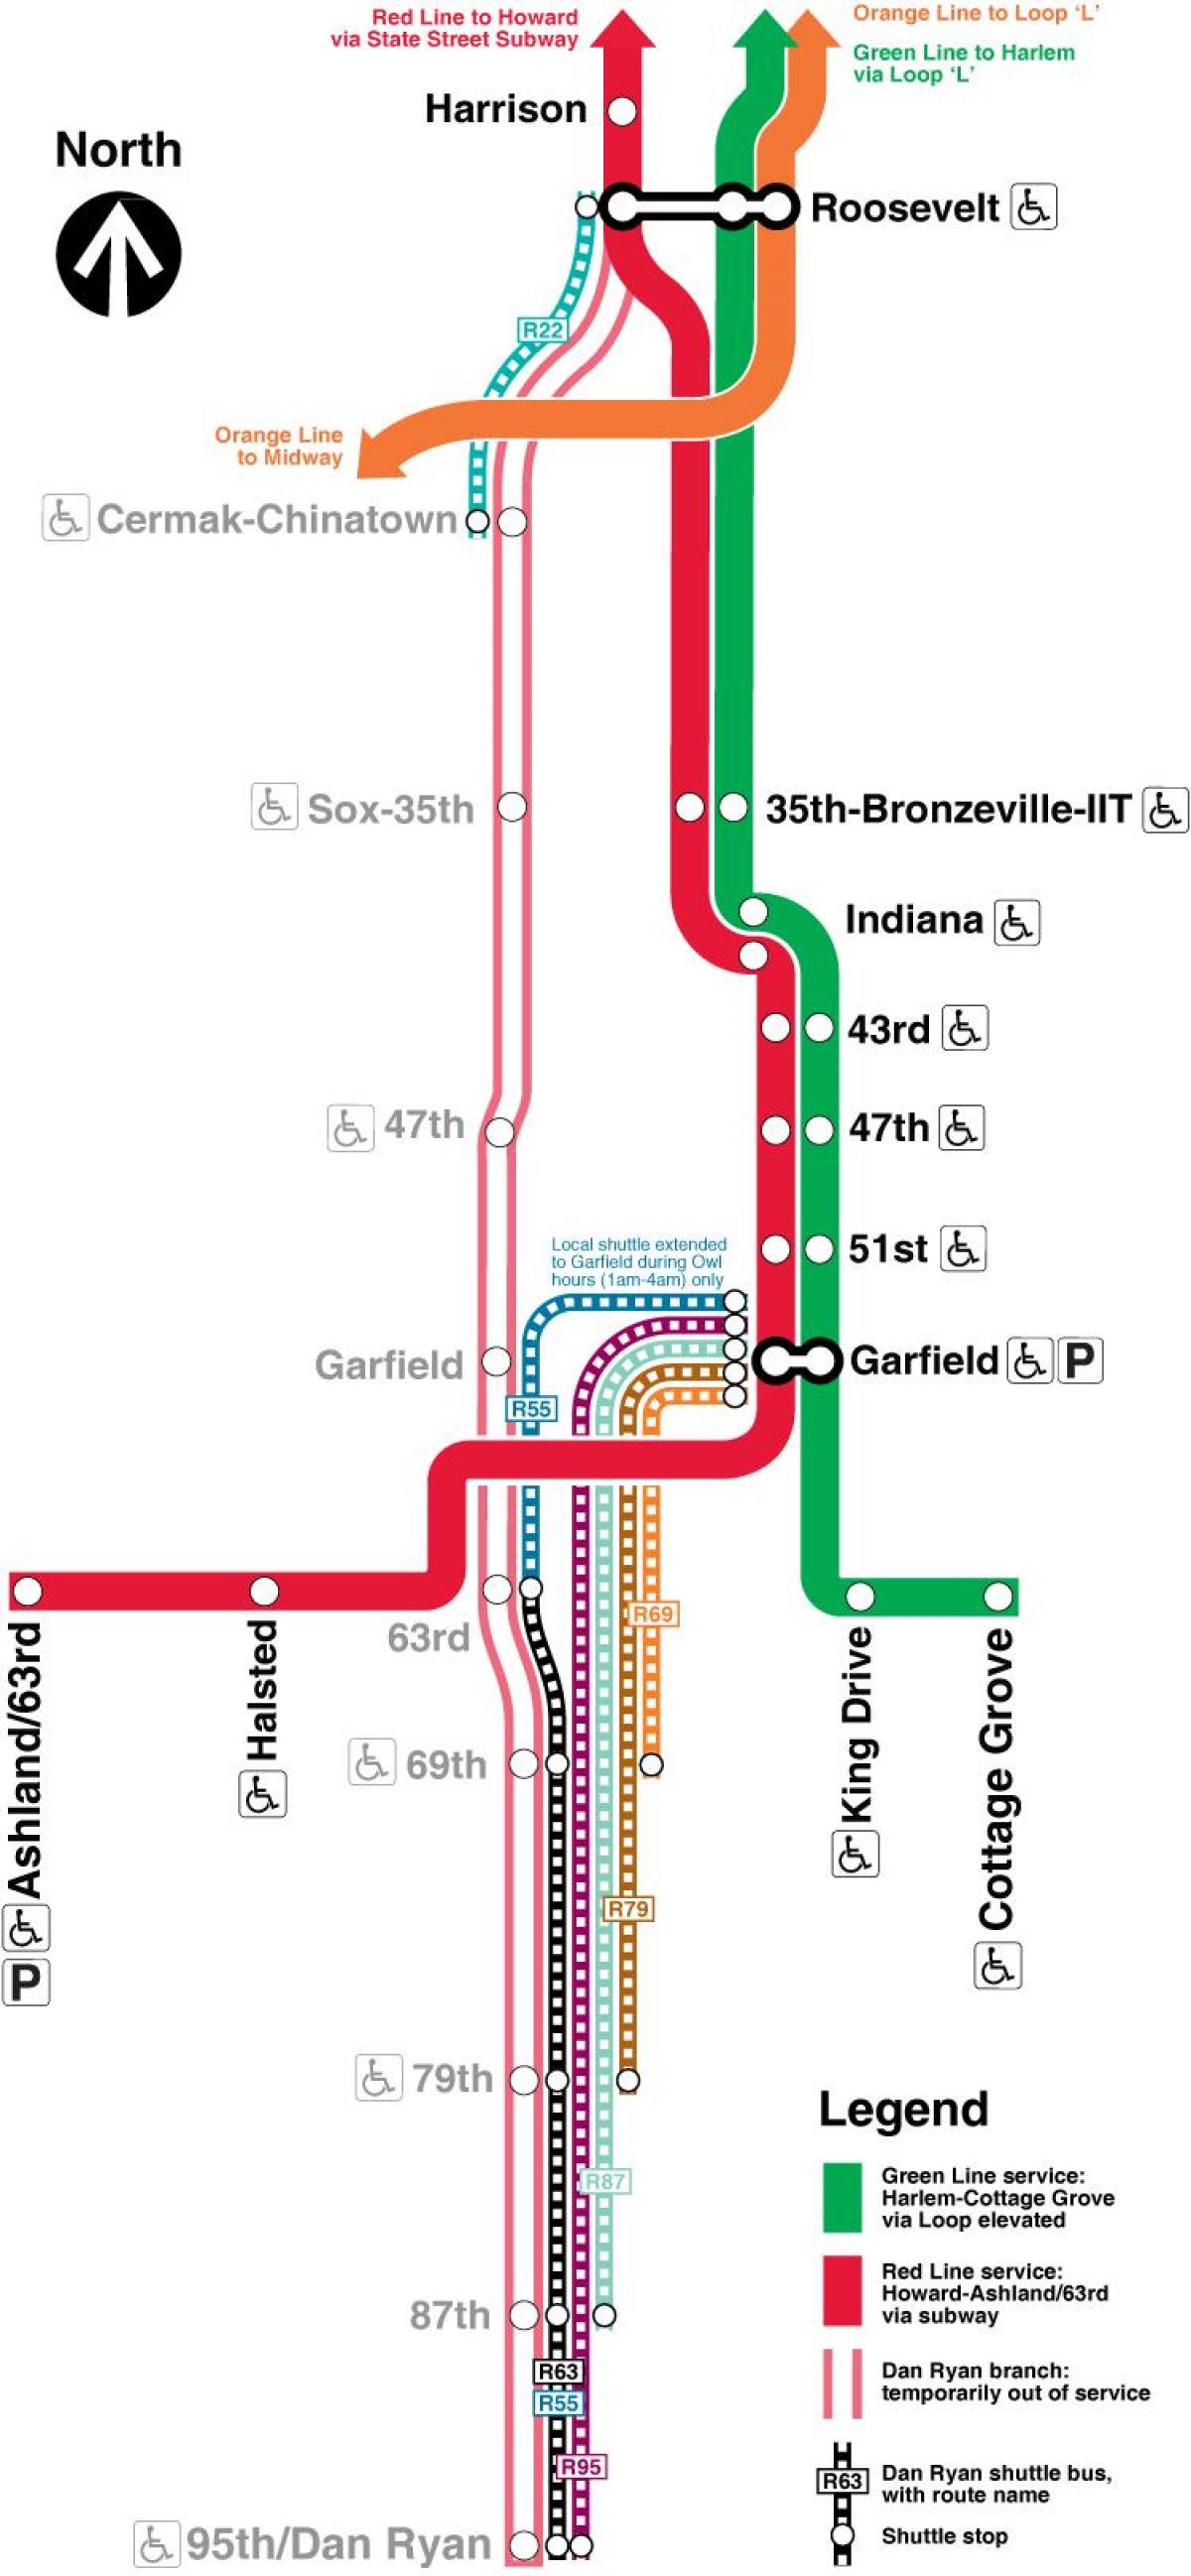 Чикаго карта на метрото на червената линия